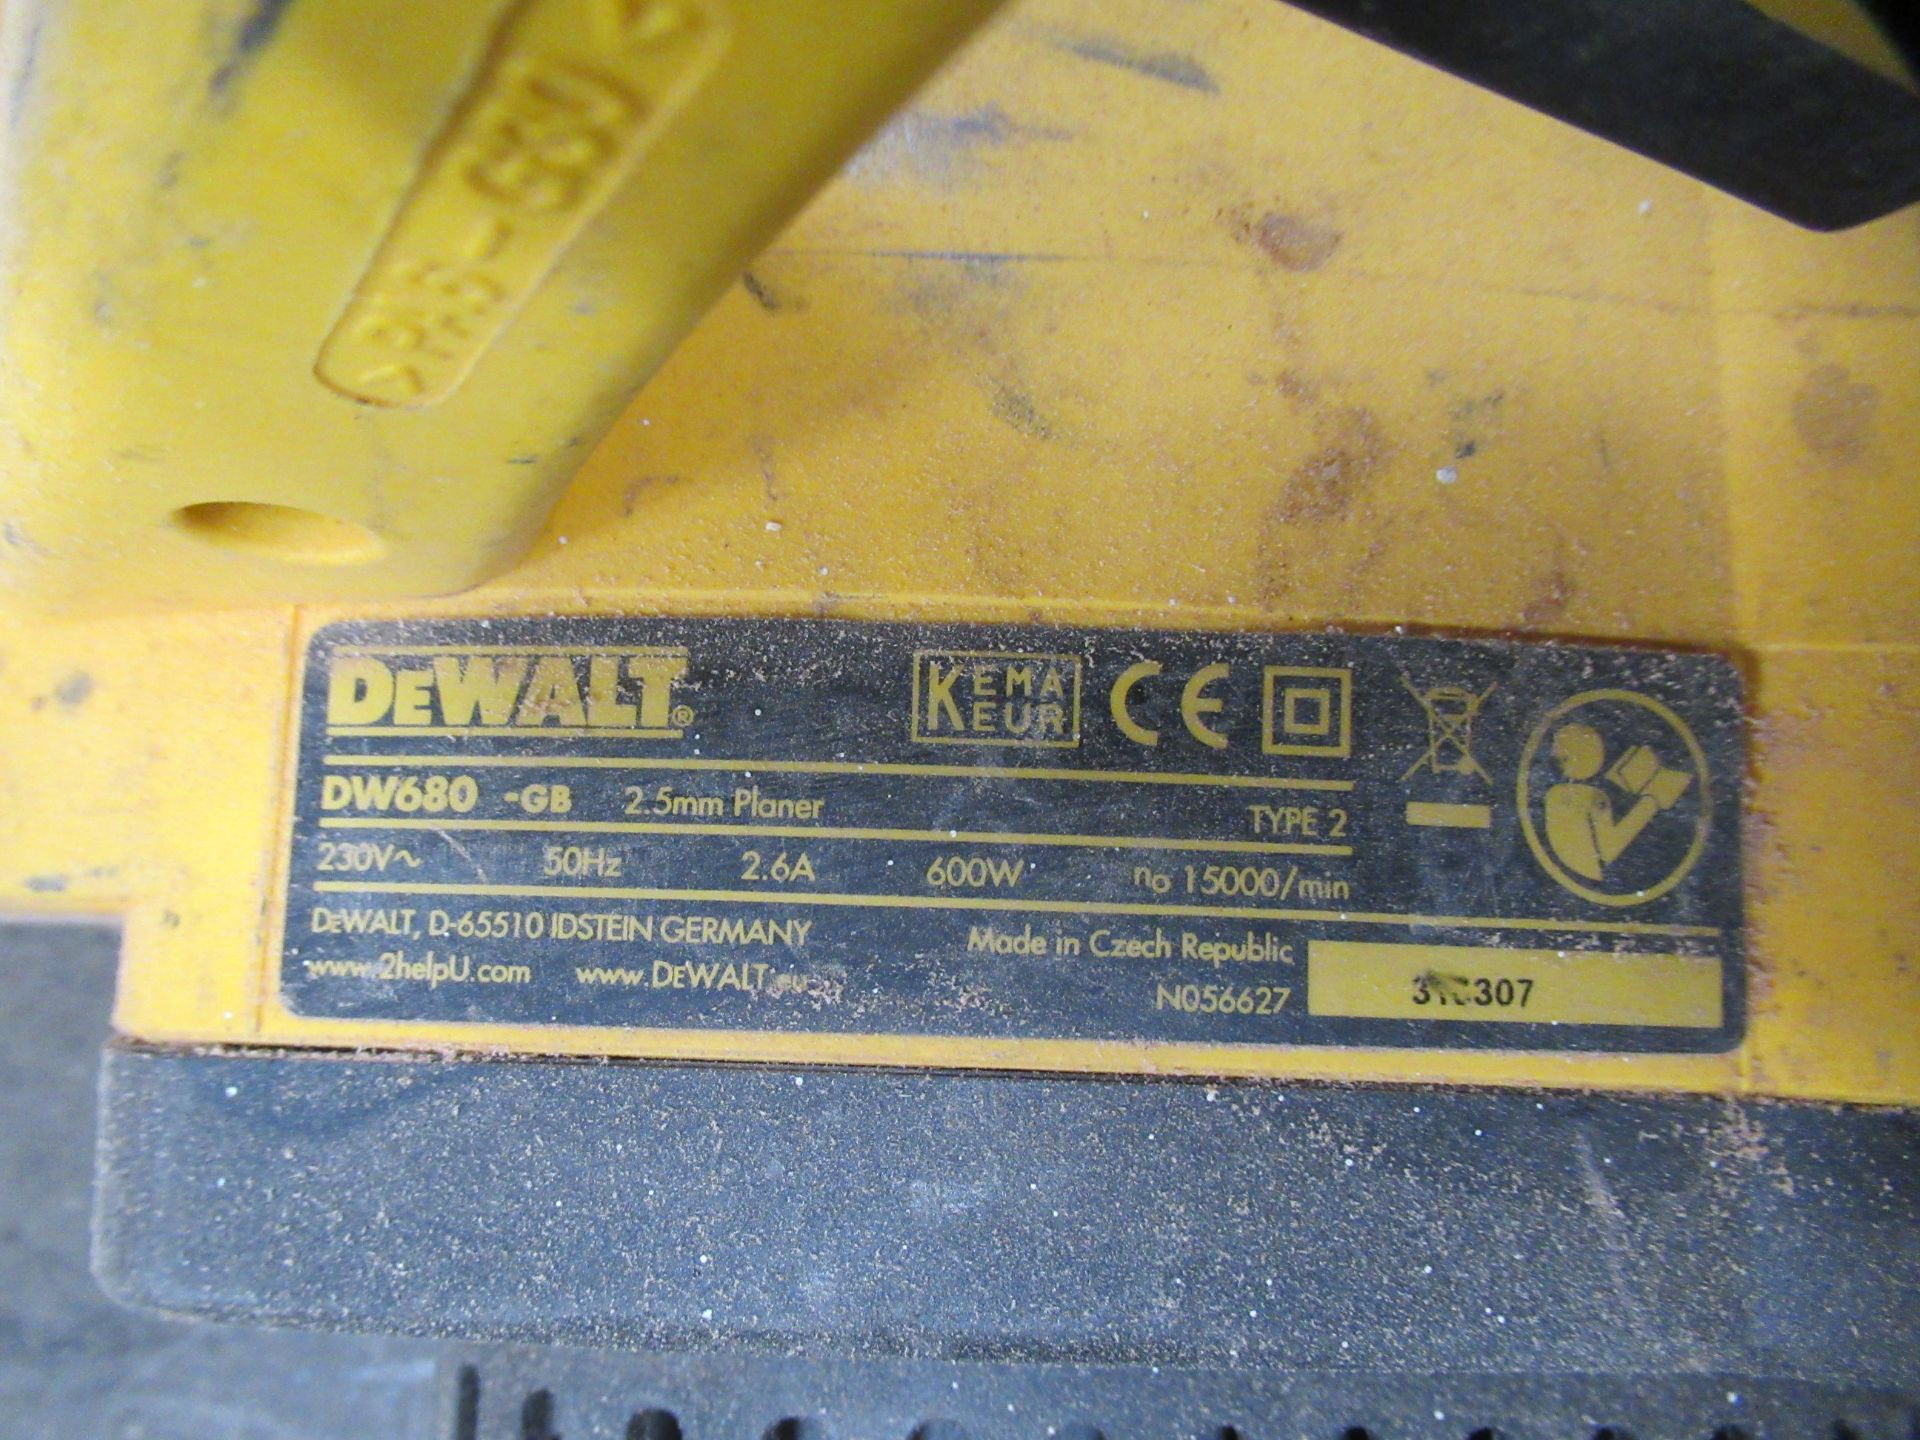 DeWalt Compound Mitre Saw & Planer - 240V - Image 6 of 8